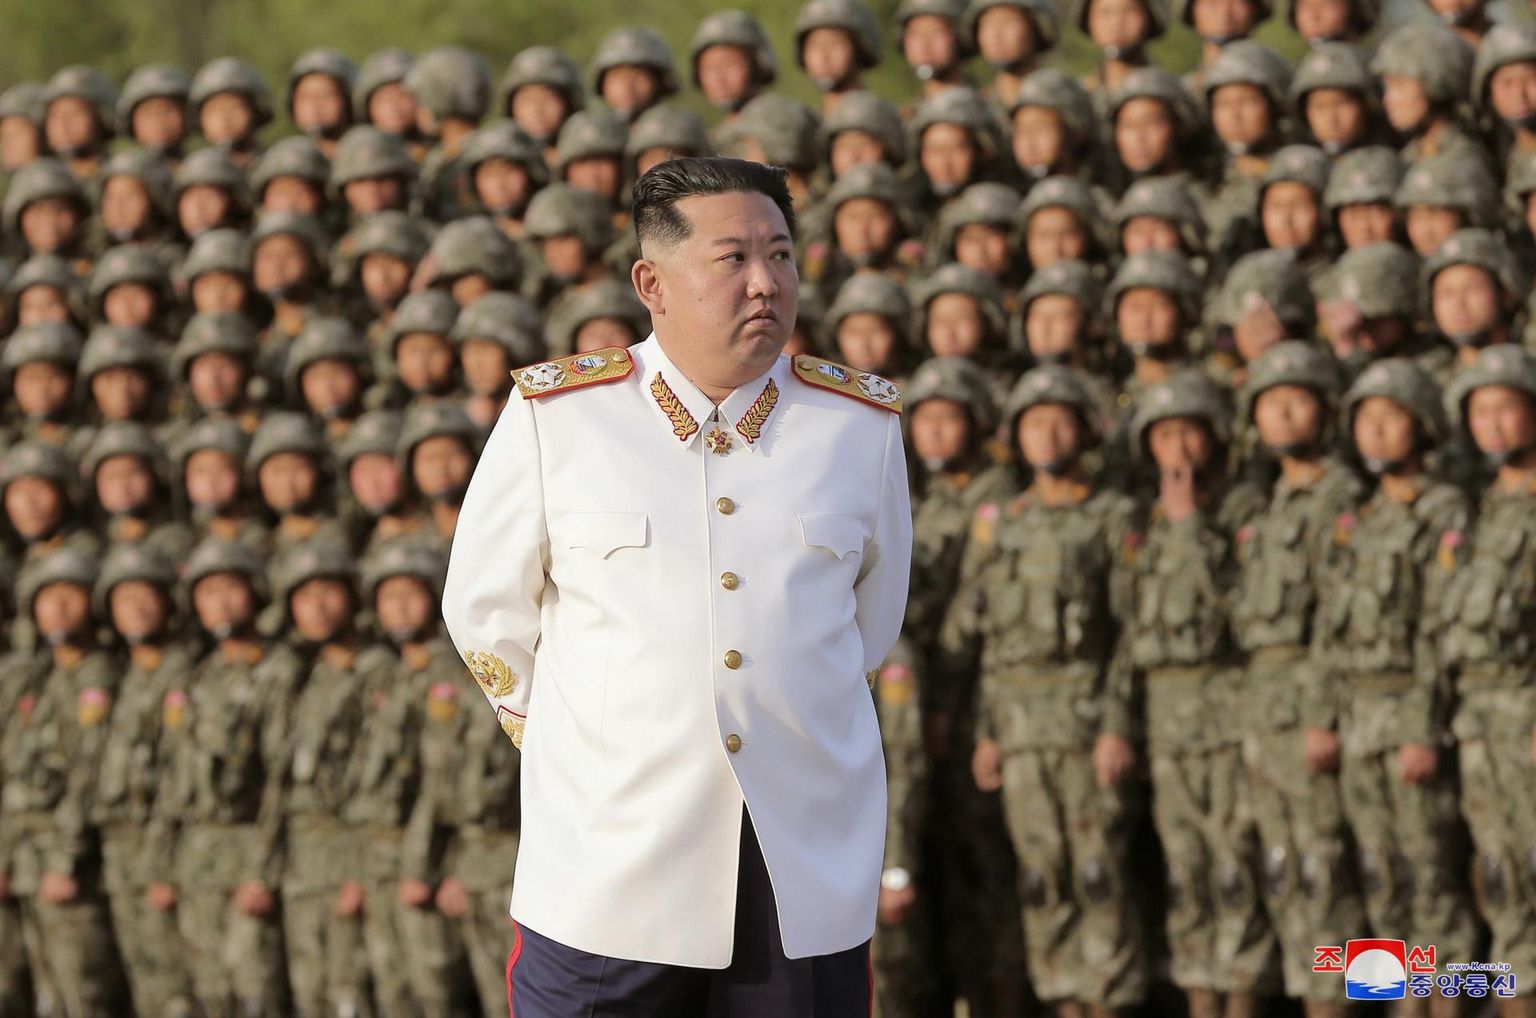 Klassikaline isolatsionismi näide on Põhja-Korea. Pildil selle liider Kim Jong-Un valges univormis sõjaväeparaadil aprillis 2022.